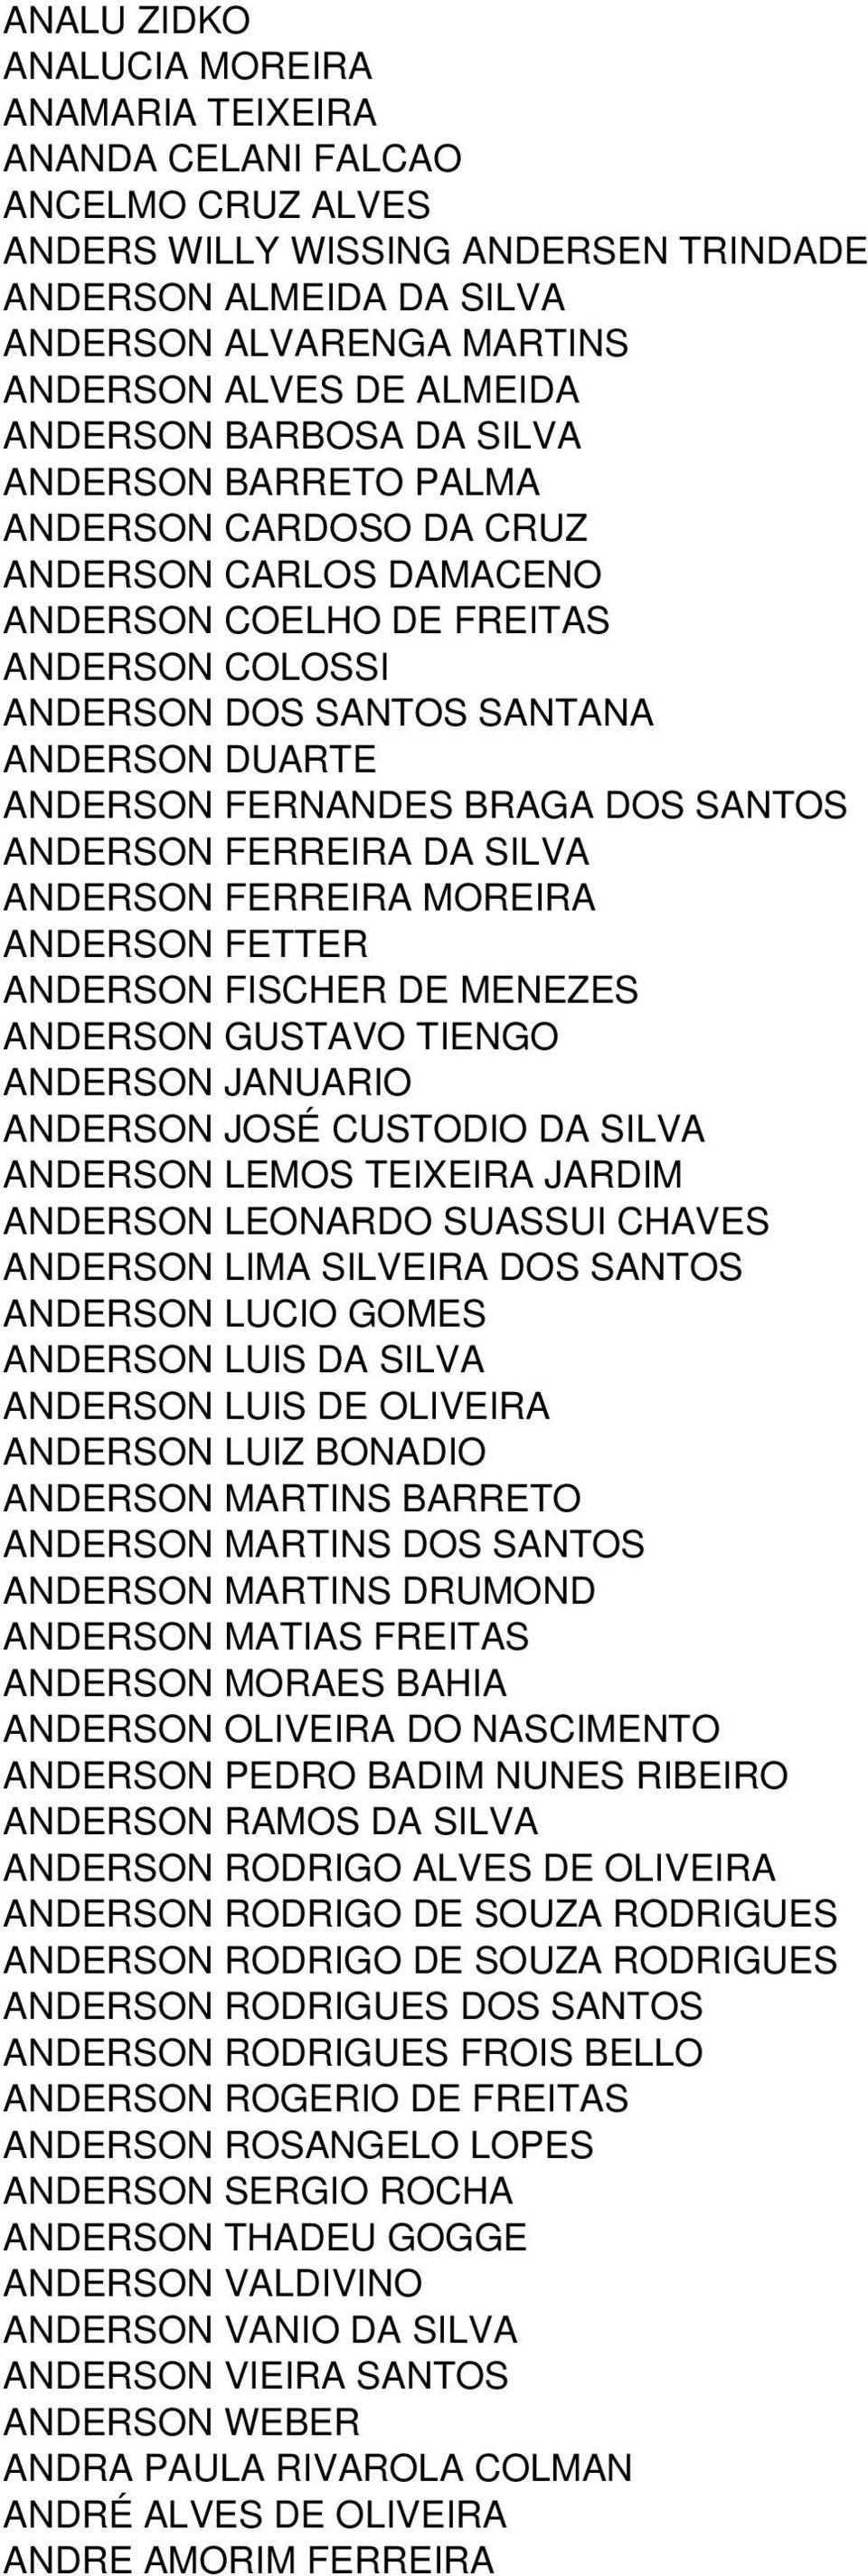 ANDERSON FERNANDES BRAGA DOS SANTOS ANDERSON FERREIRA DA SILVA ANDERSON FERREIRA MOREIRA ANDERSON FETTER ANDERSON FISCHER DE MENEZES ANDERSON GUSTAVO TIENGO ANDERSON JANUARIO ANDERSON JOSÉ CUSTODIO